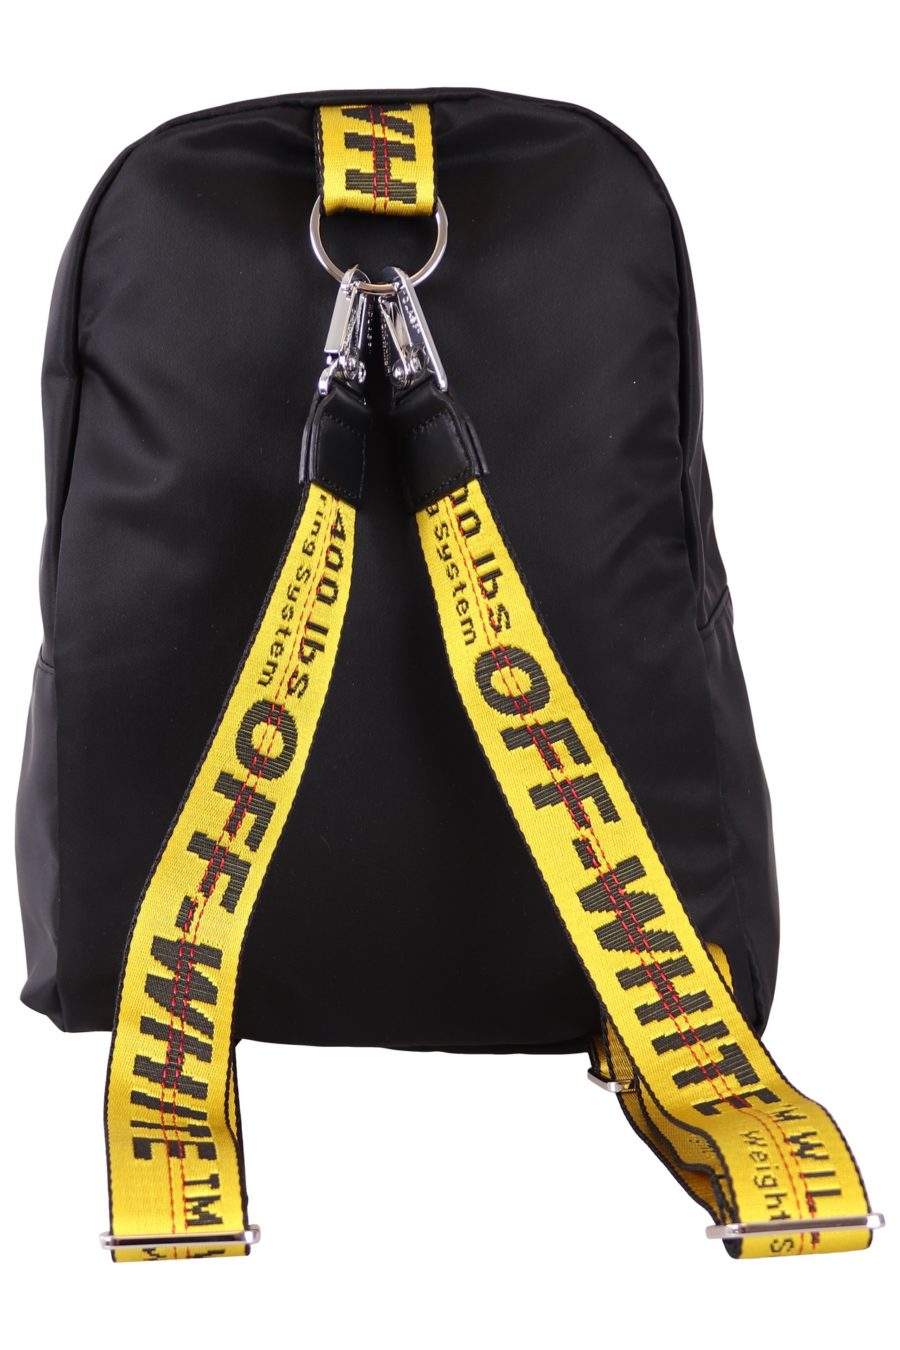 Rucksack Off-White schwarz mit Logo und gelben Trägern - b63c4c220b18cd16f7e689eb48276ca5643acb10